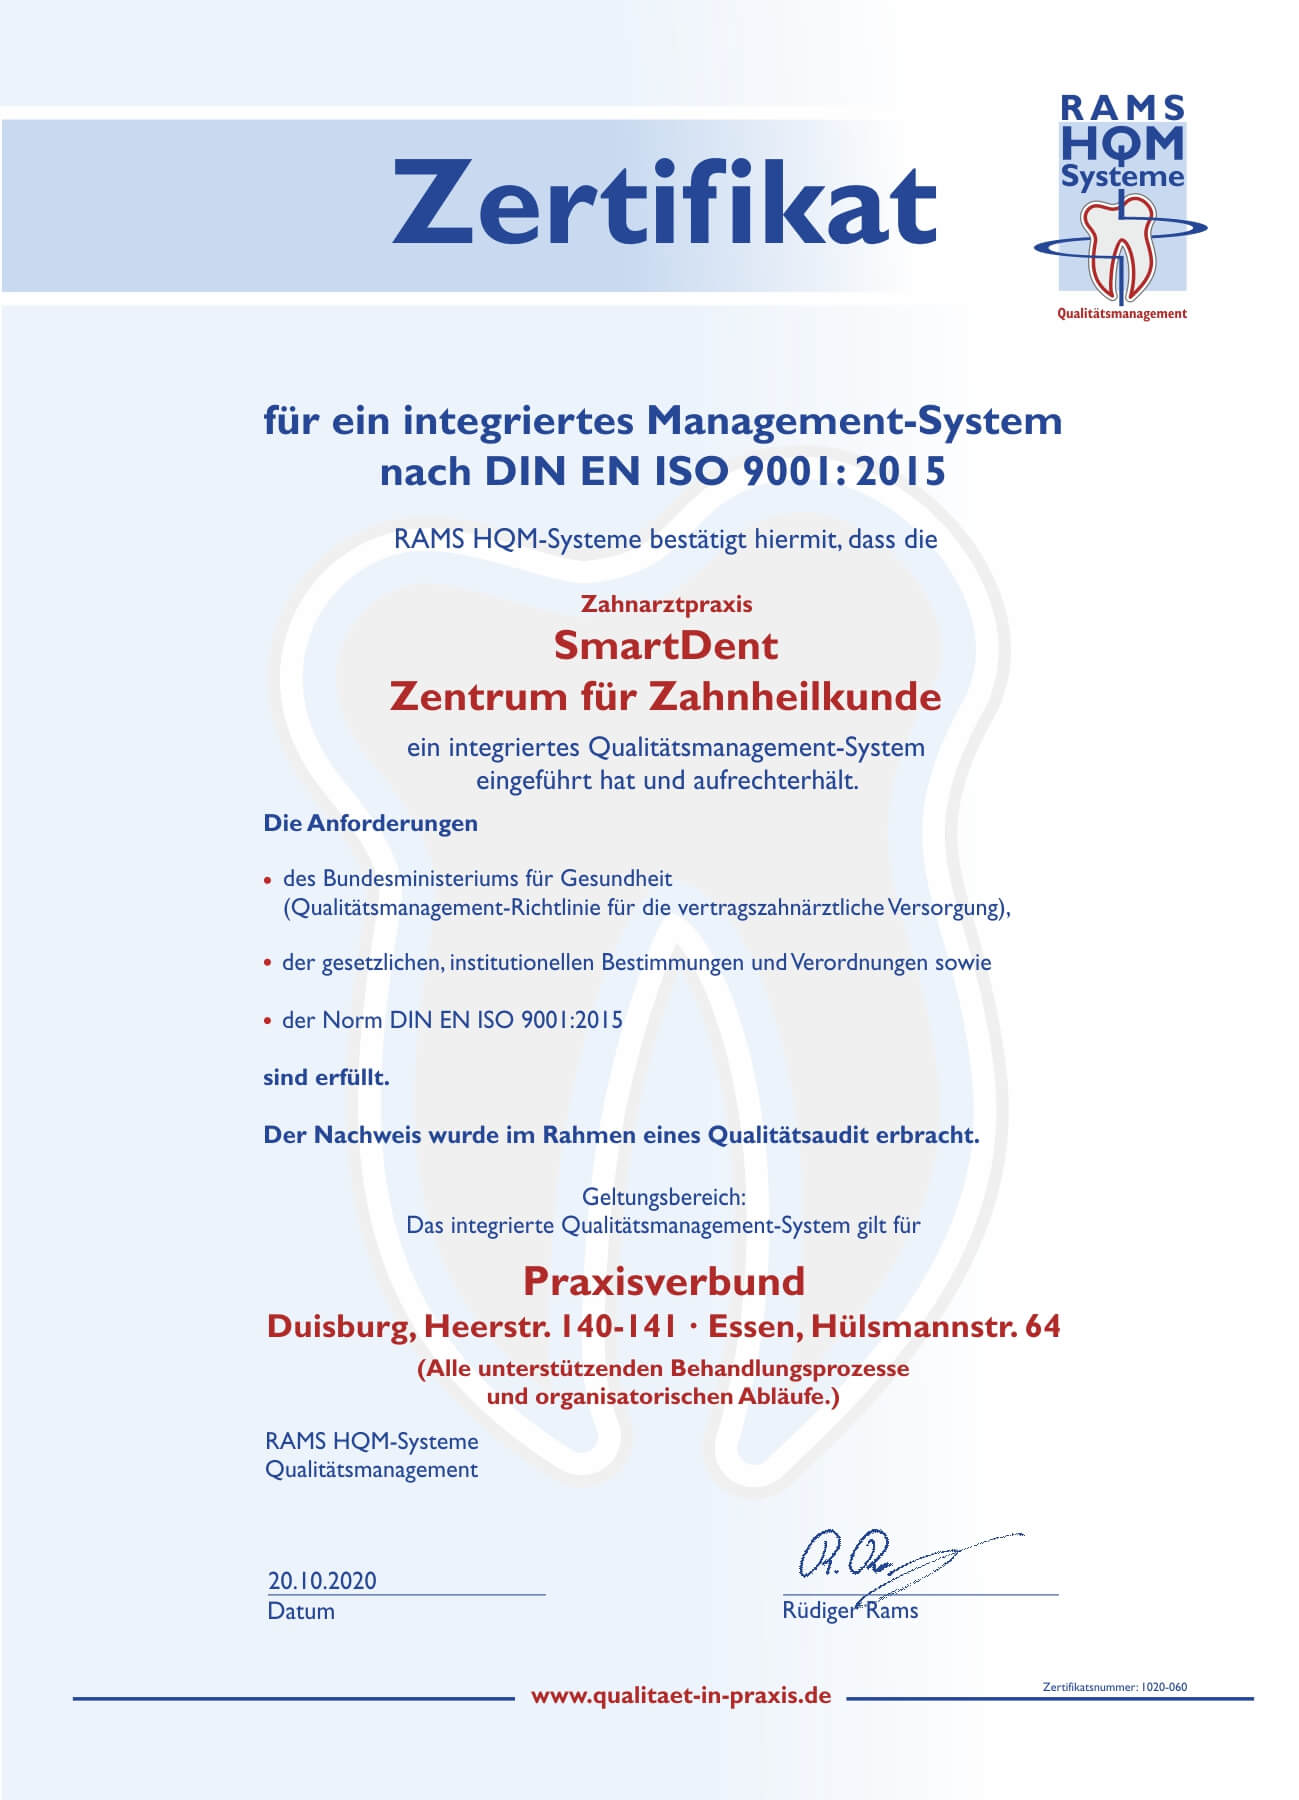 RAMS HQM Systeme - Zertifikat für ein integriertes Management-System nach DIN EN ISO 9001:2015